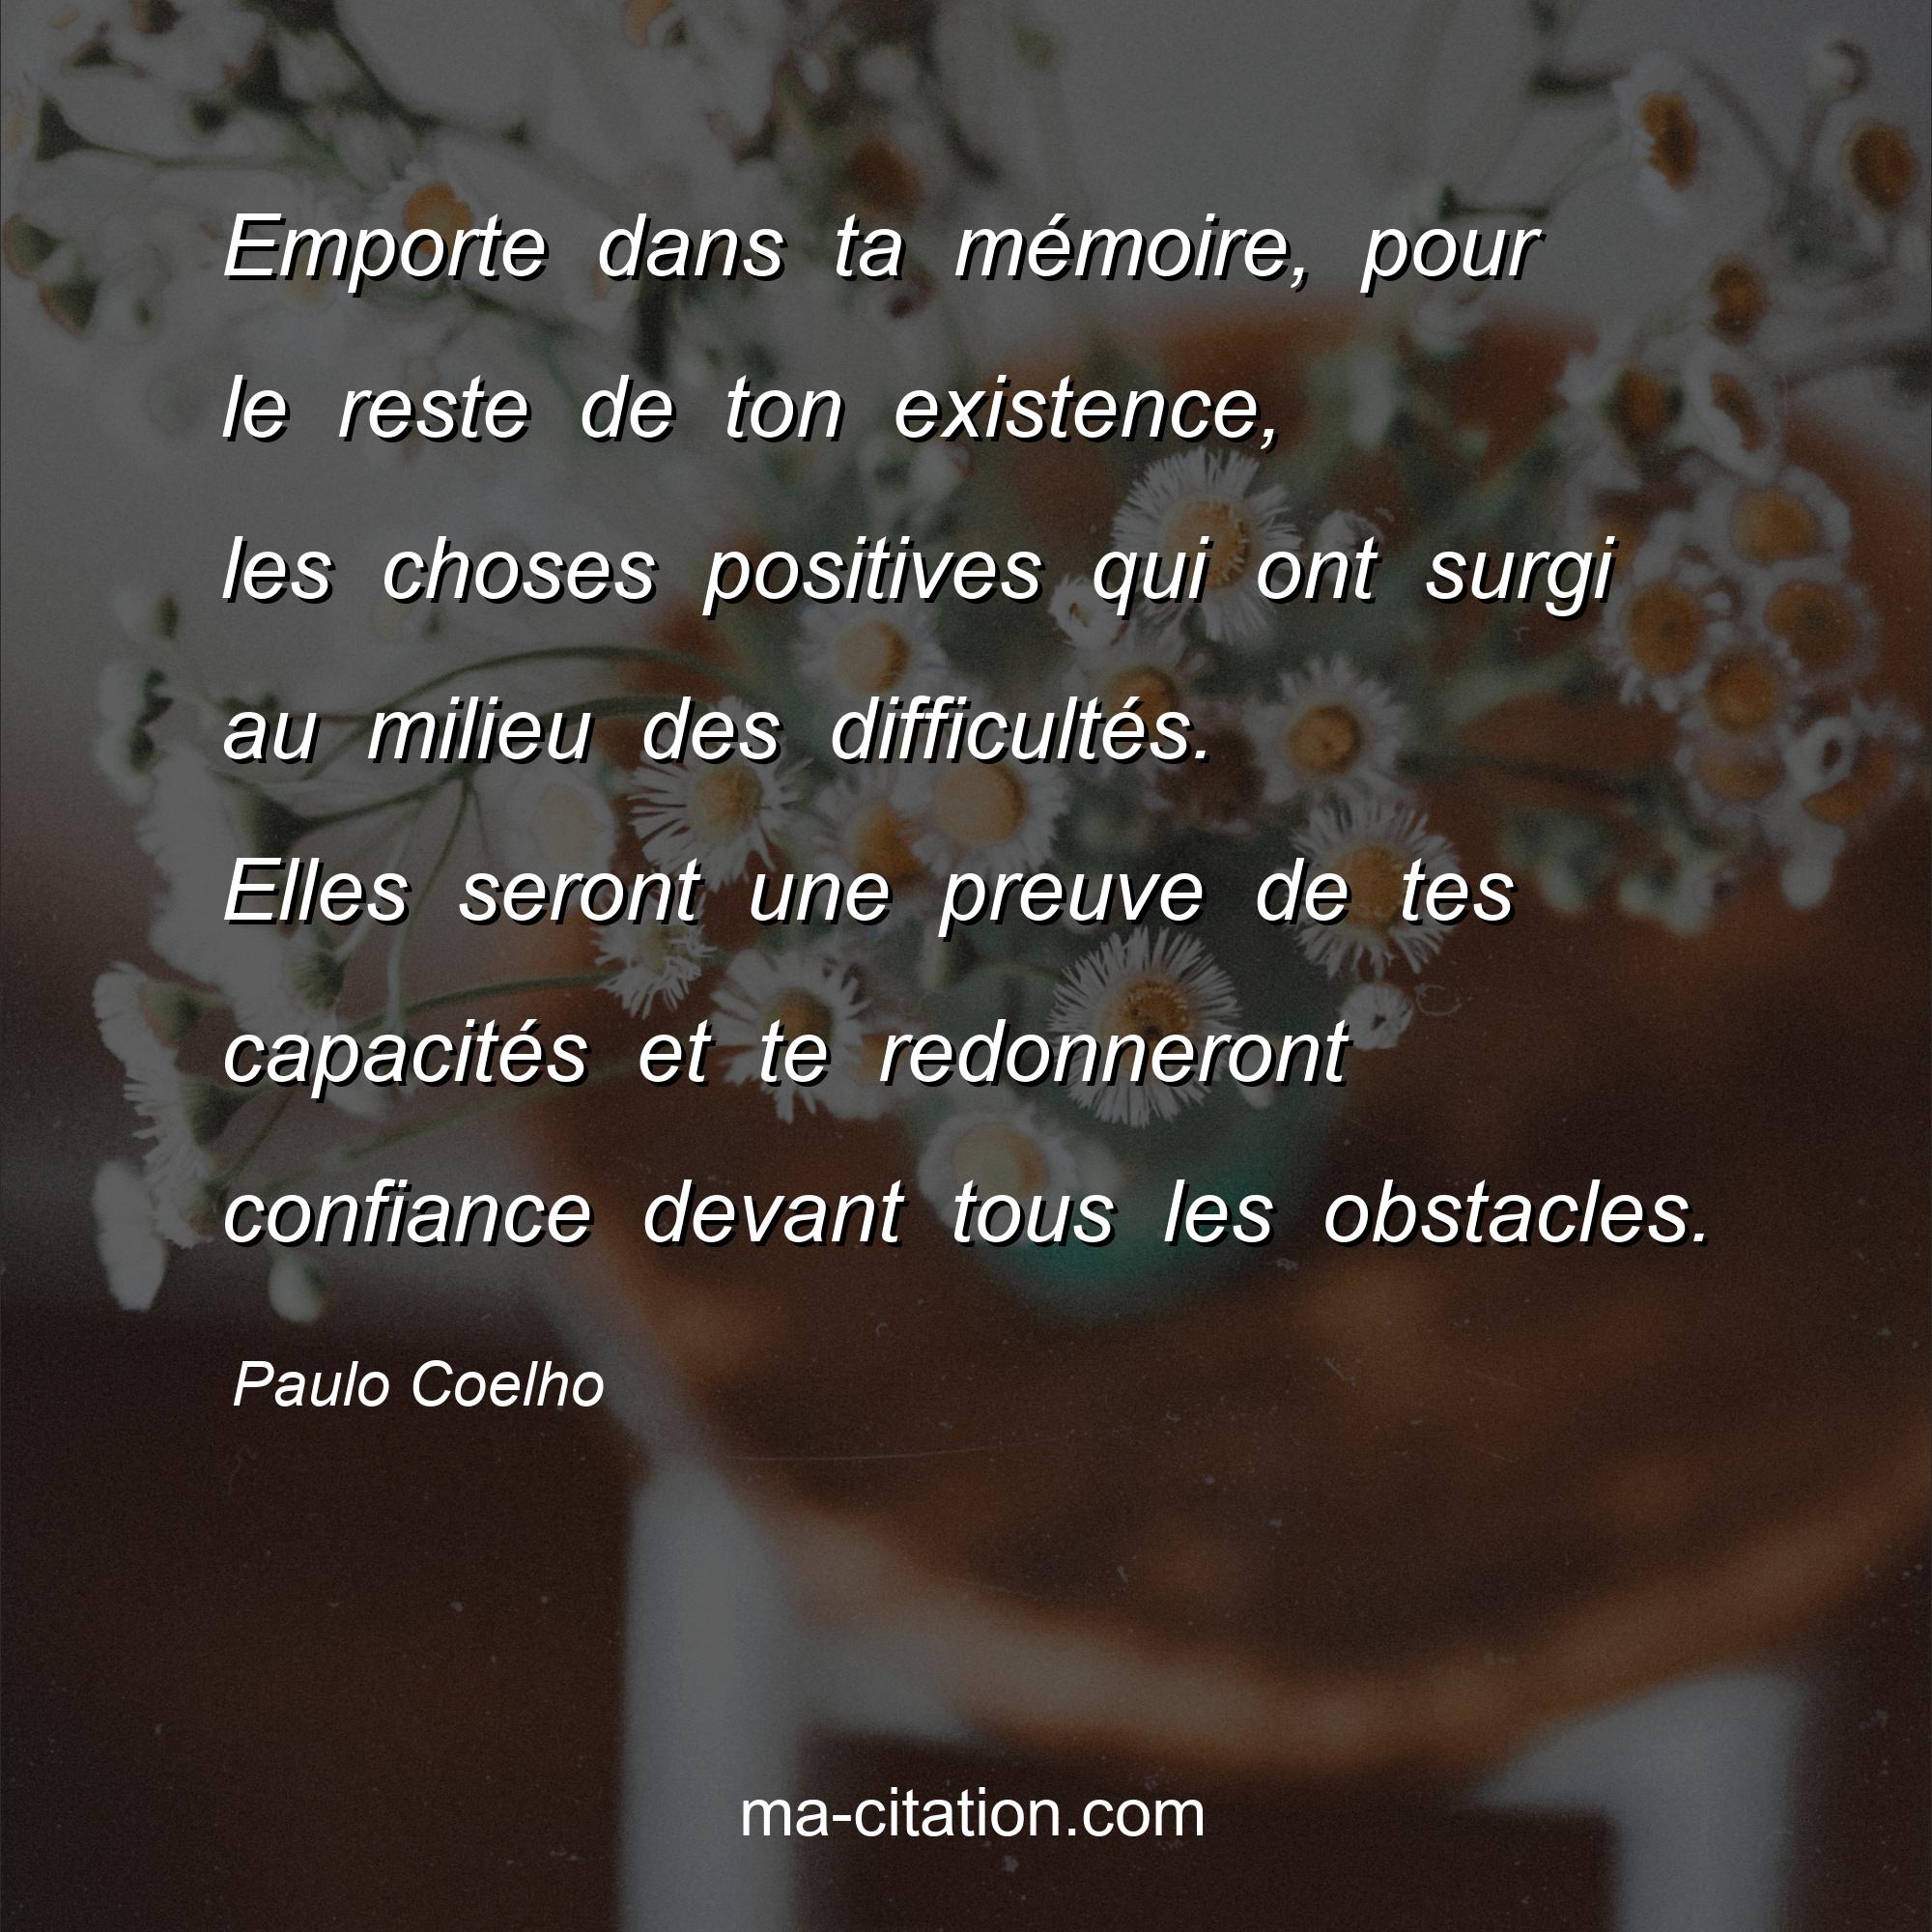 Paulo Coelho : Emporte dans ta mémoire, pour le reste de ton existence, les choses positives qui ont surgi au milieu des difficultés. Elles seront une preuve de tes capacités et te redonneront confiance devant tous les obstacles.